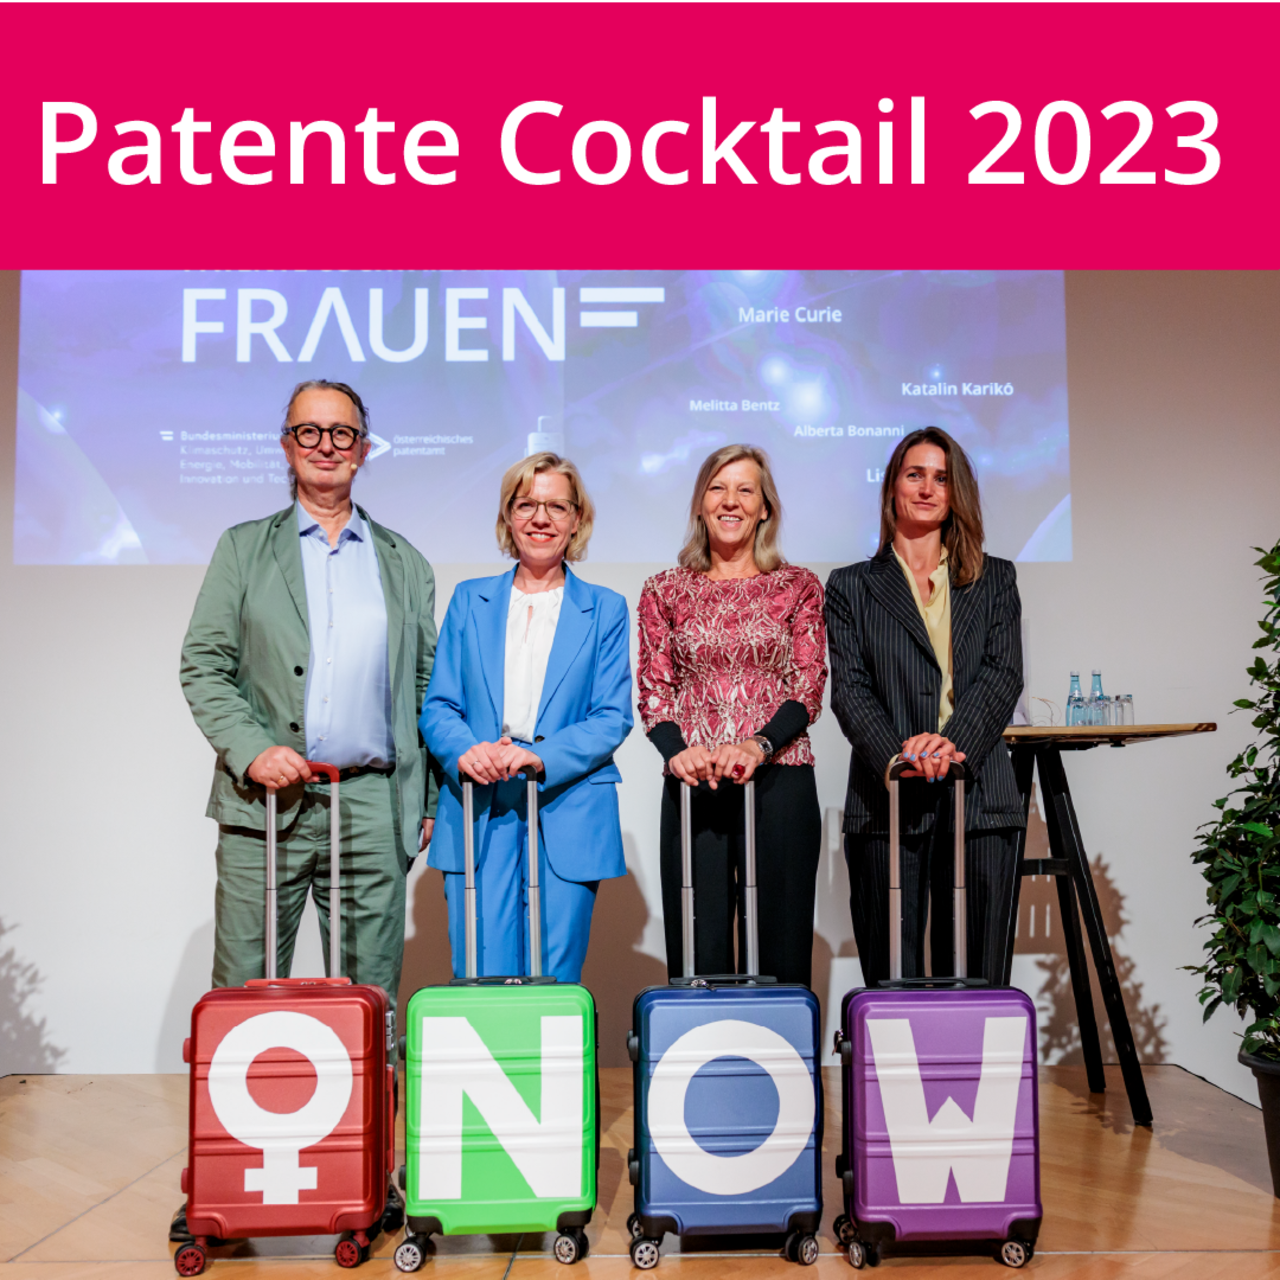 Patente Cocktail 2023: Vier Personen mit Koffern